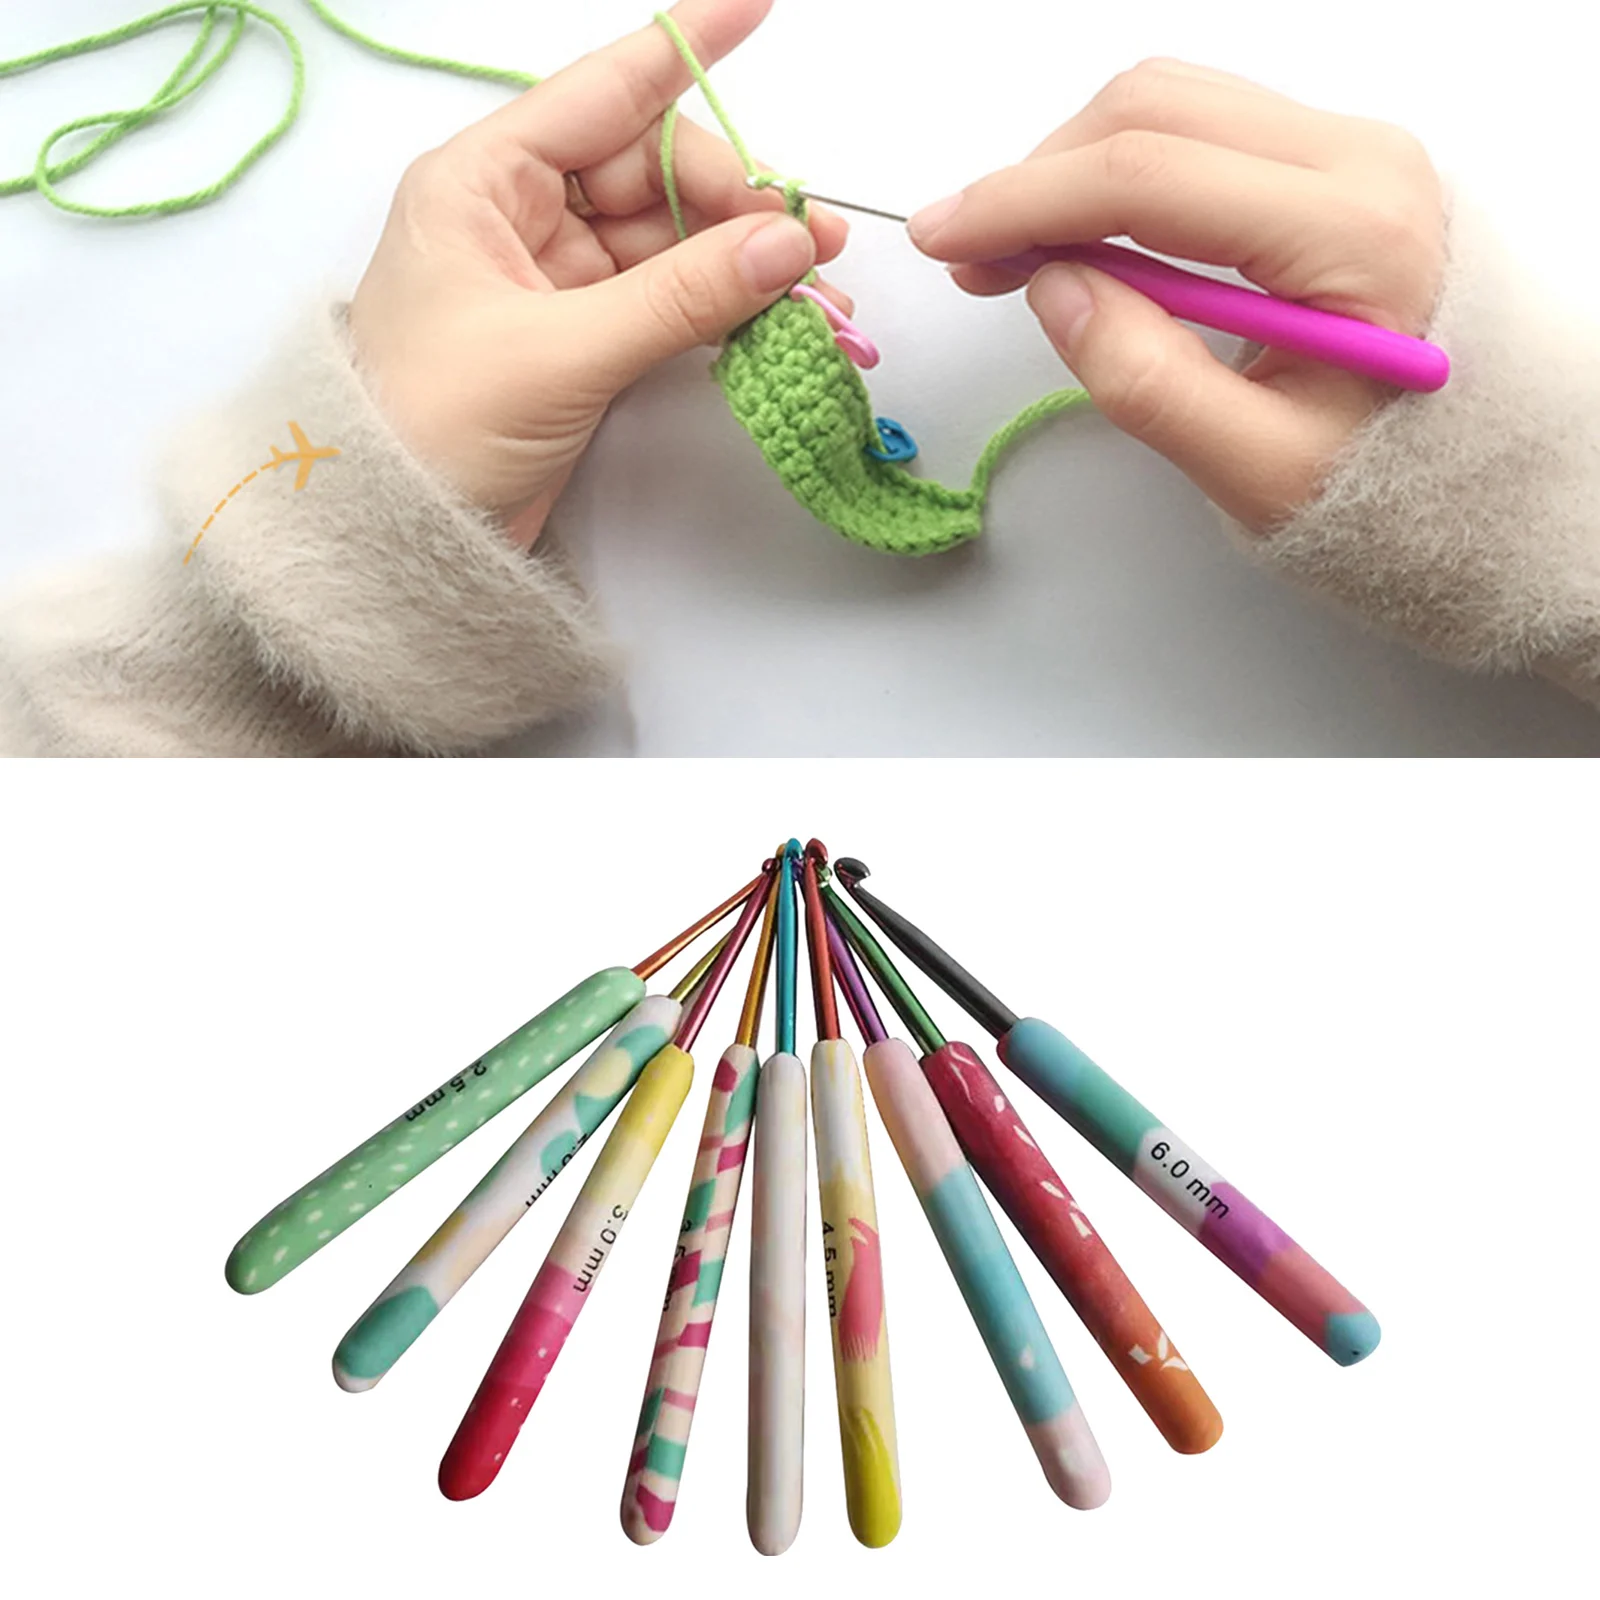 Crochet Hooks Set 9Pcs Aluminum Handle Knitting Needles Crocheting 2-6mm Yarn Craft Knitting Needles for Beginners Women